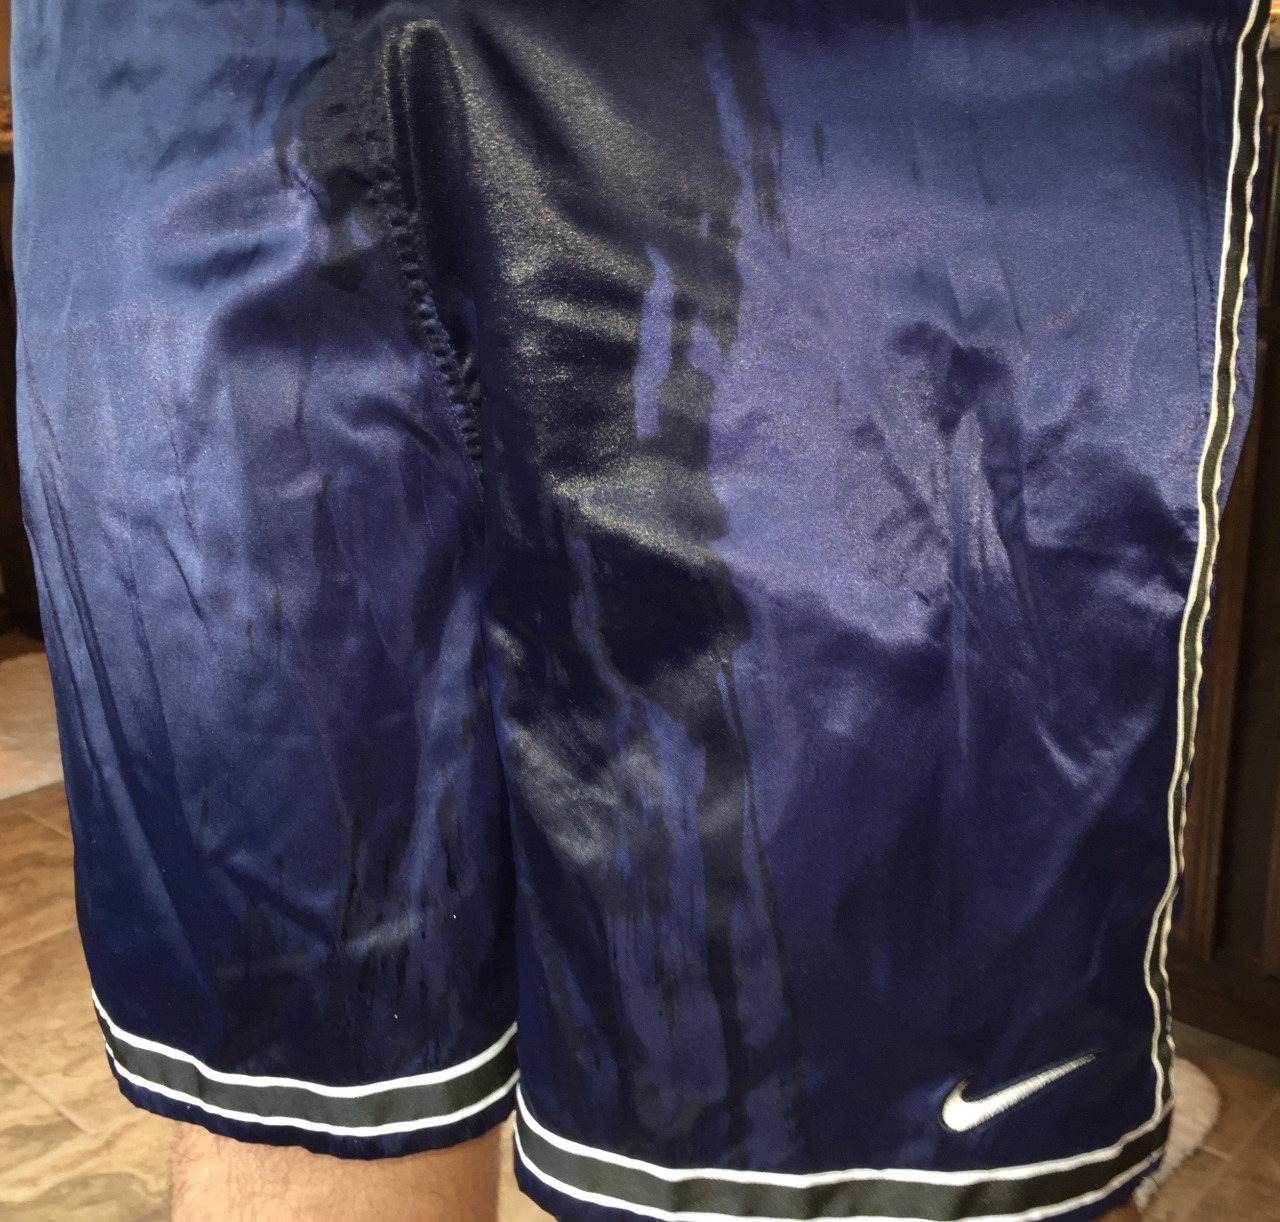 Wet Nike shorts